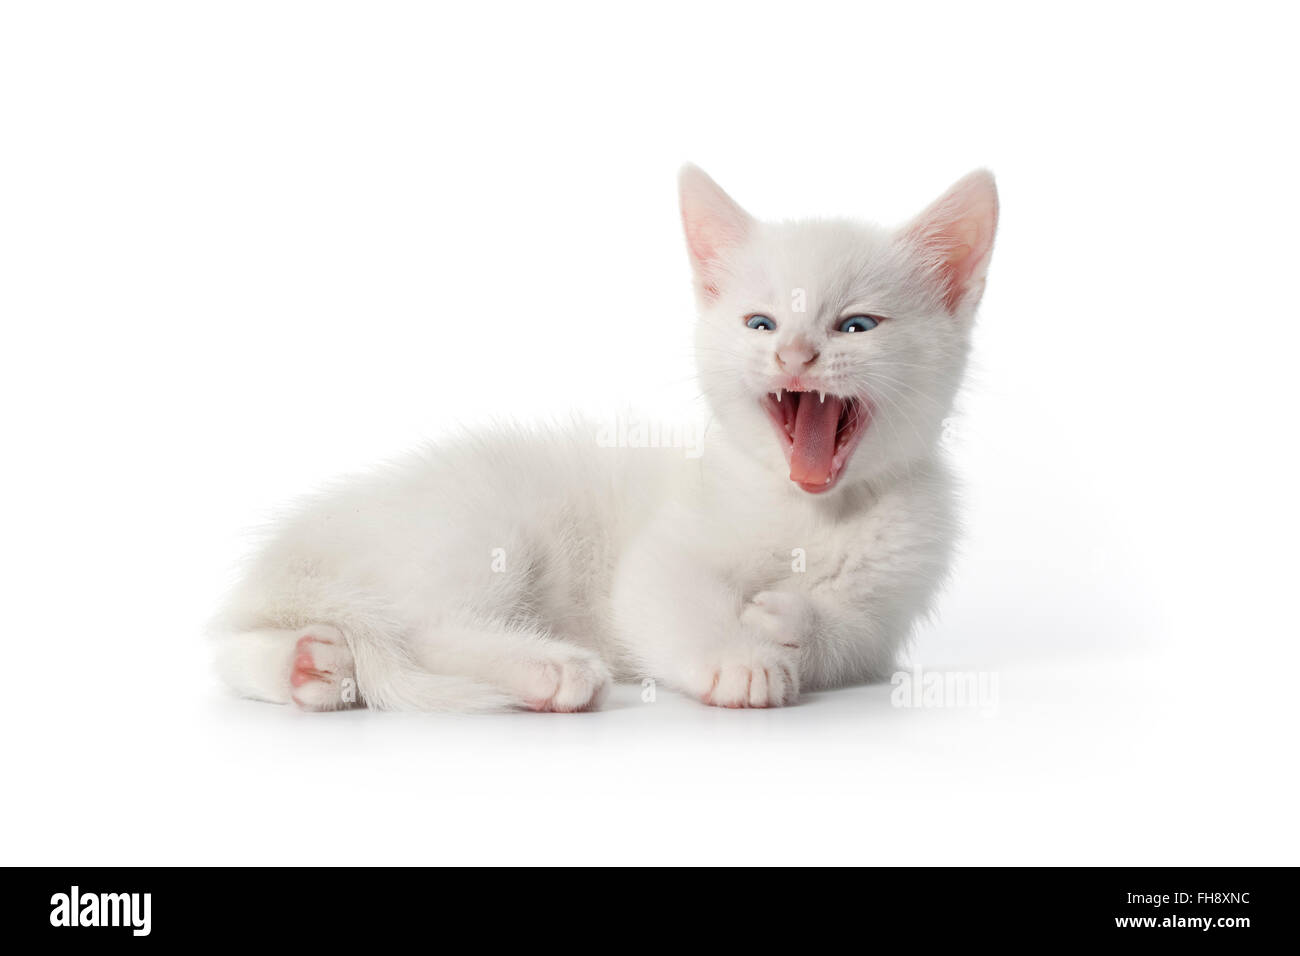 Sbadigliare carino gattino bianco con occhi blu su sfondo bianco Foto Stock